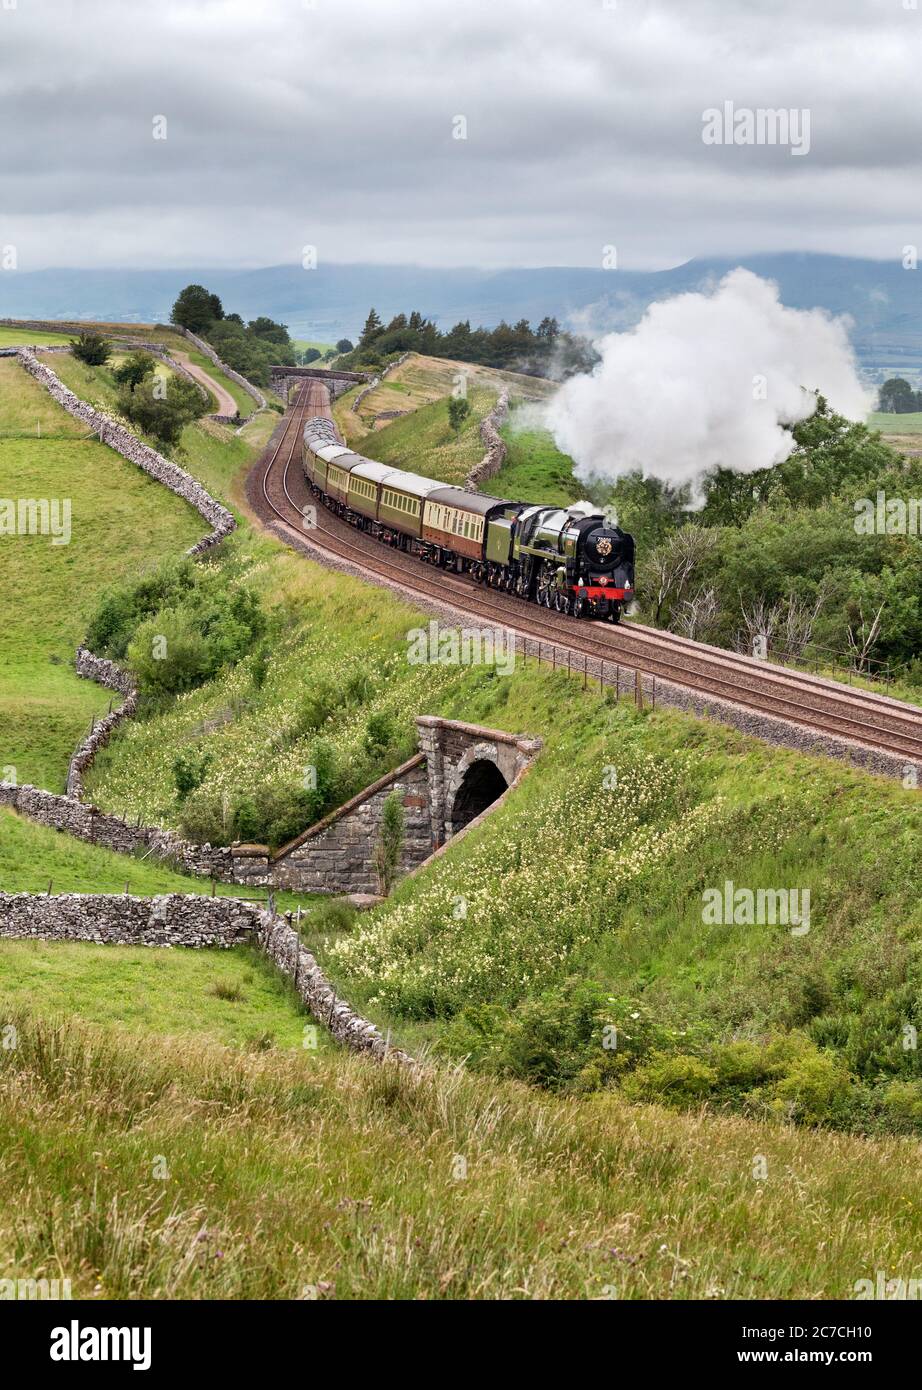 La locomotiva a vapore 'Britannia' trasporta il treno 'Fellsman' a sud sulla ferrovia Settle-Carlisle, Birkett Common, Kirkby Stephen, Cumbria, 15 luglio 2020. Foto Stock